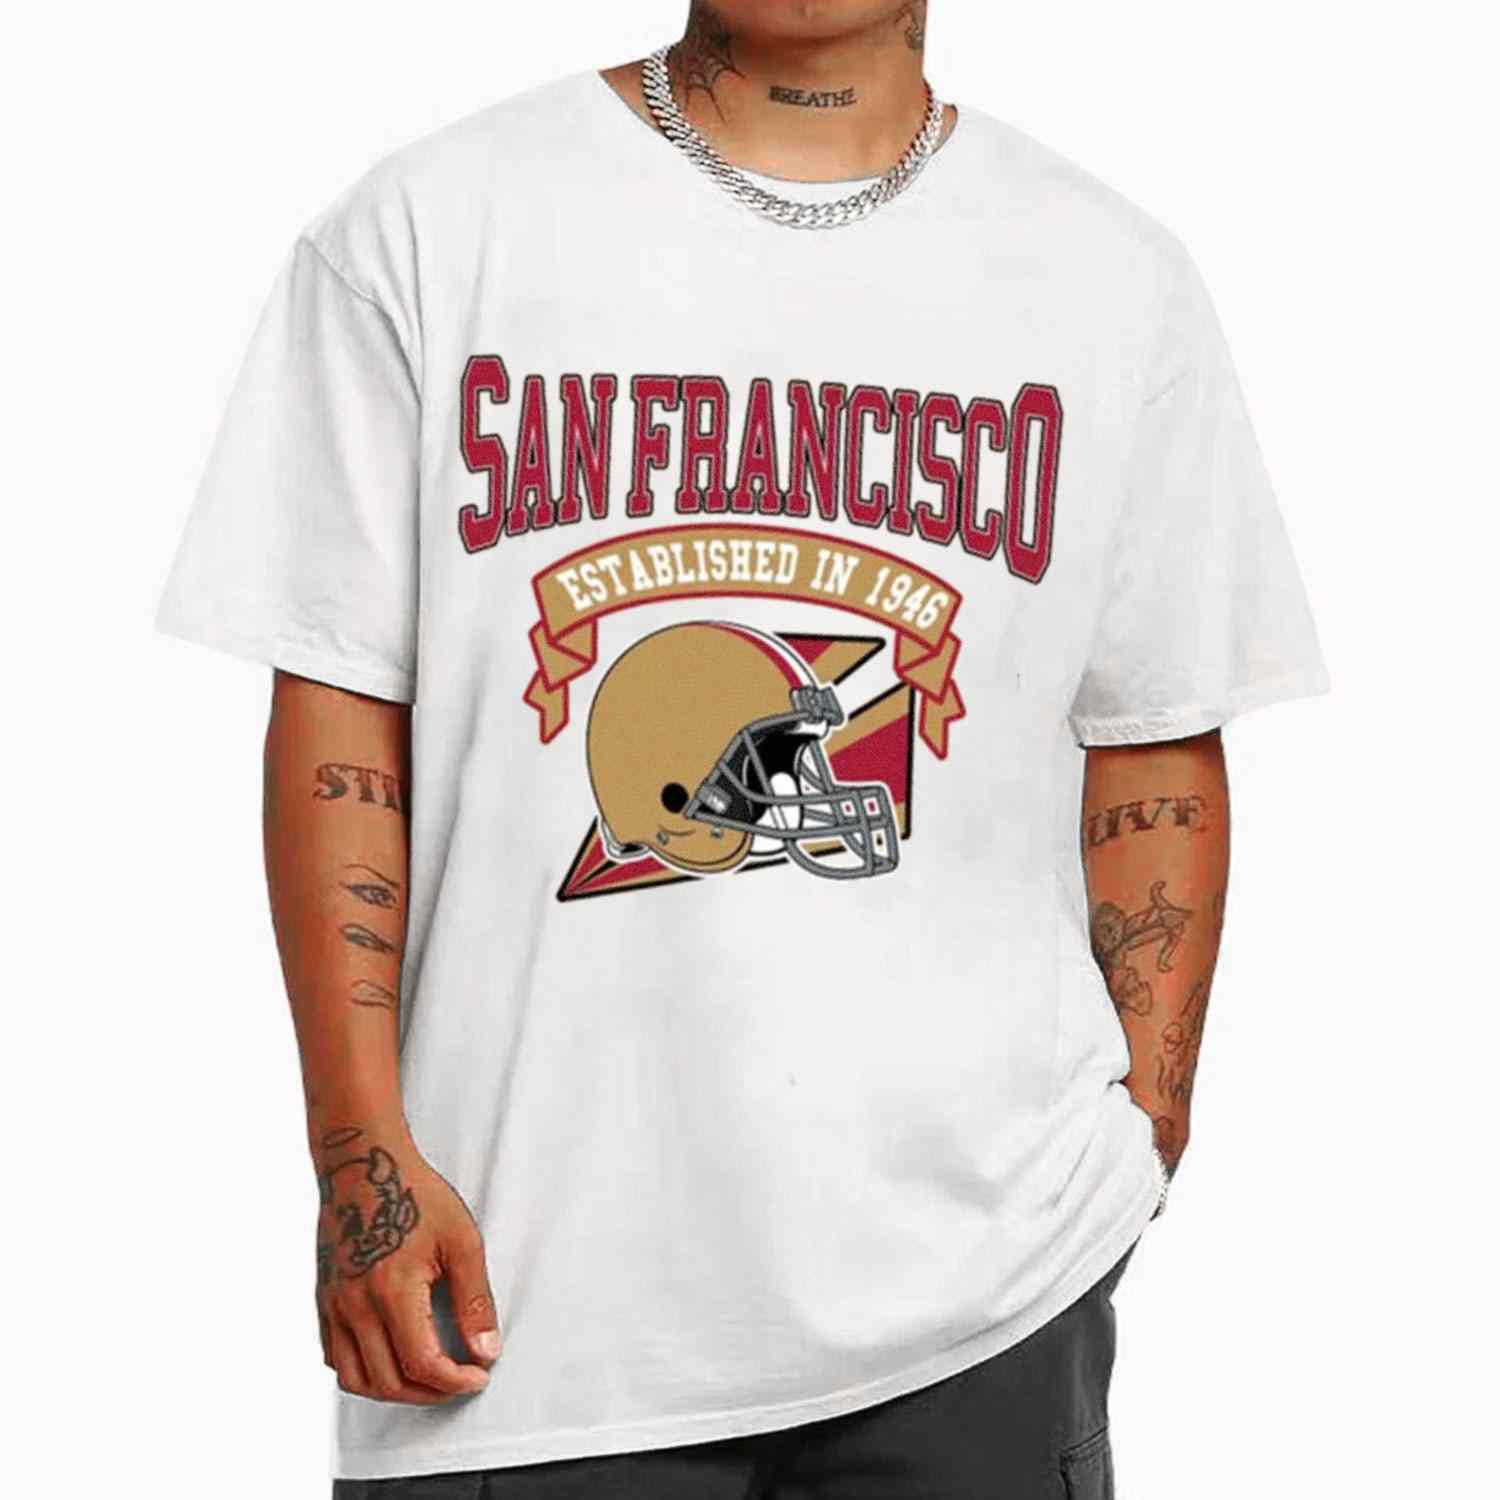 Vintage Football Team San Francisco 49ers Established In 1946 T-Shirt